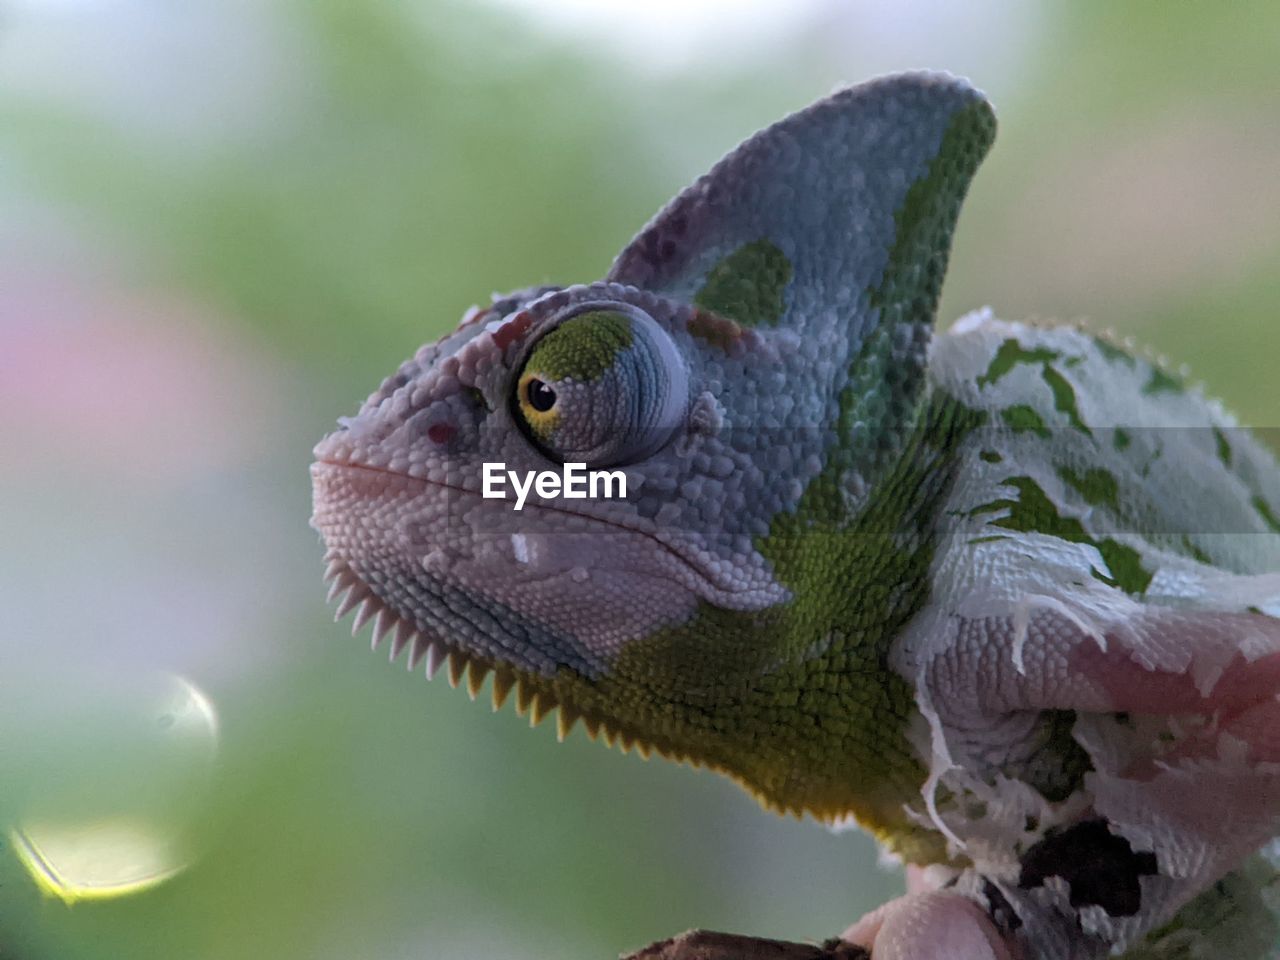 Closeup of lizard chameleon